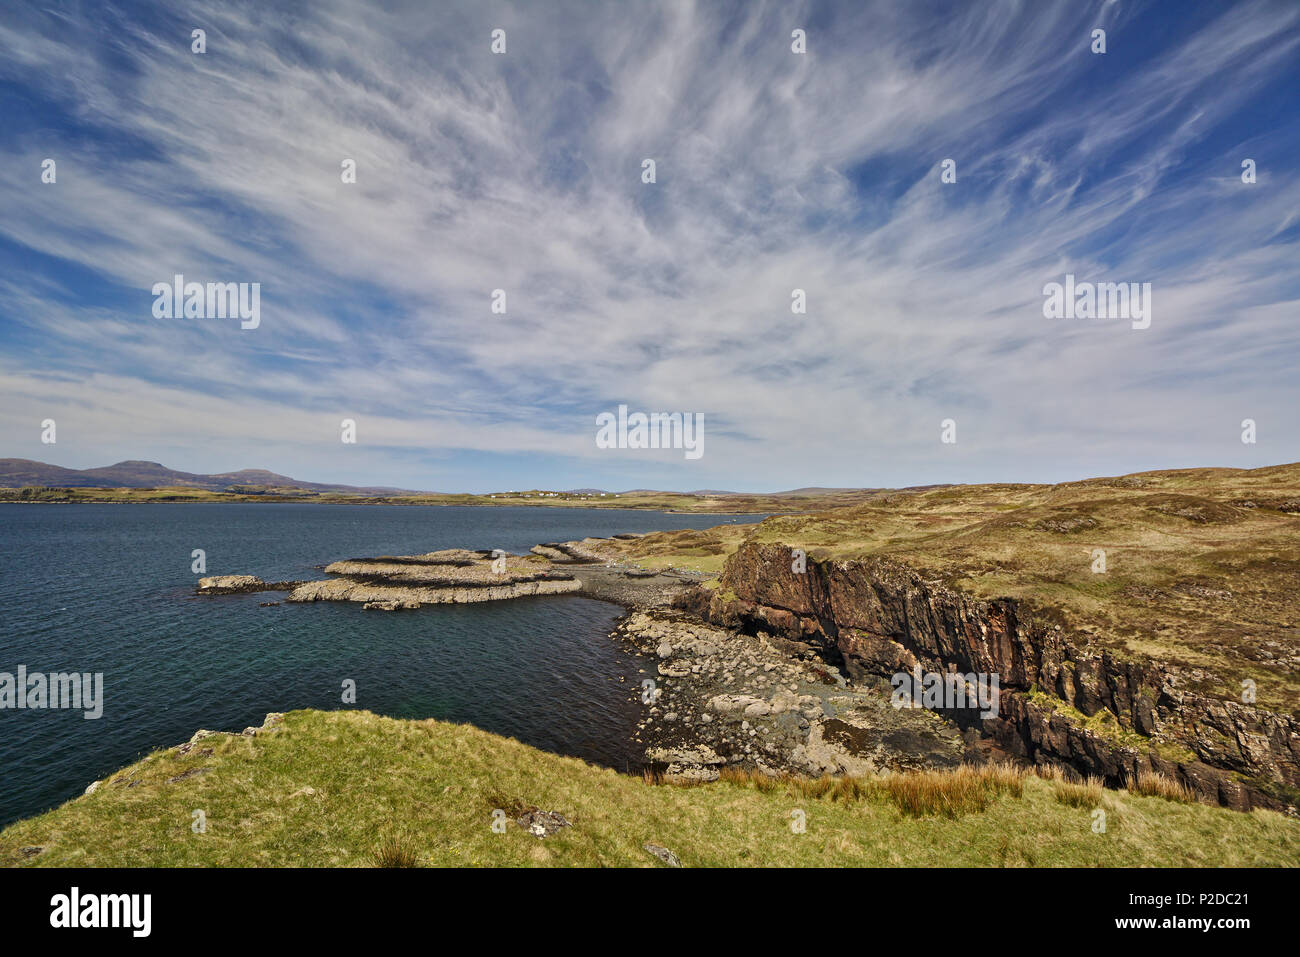 Scogliera sul mare con un basso promontorio in background e cielo blu con il bianco cirrus nuvole Foto Stock